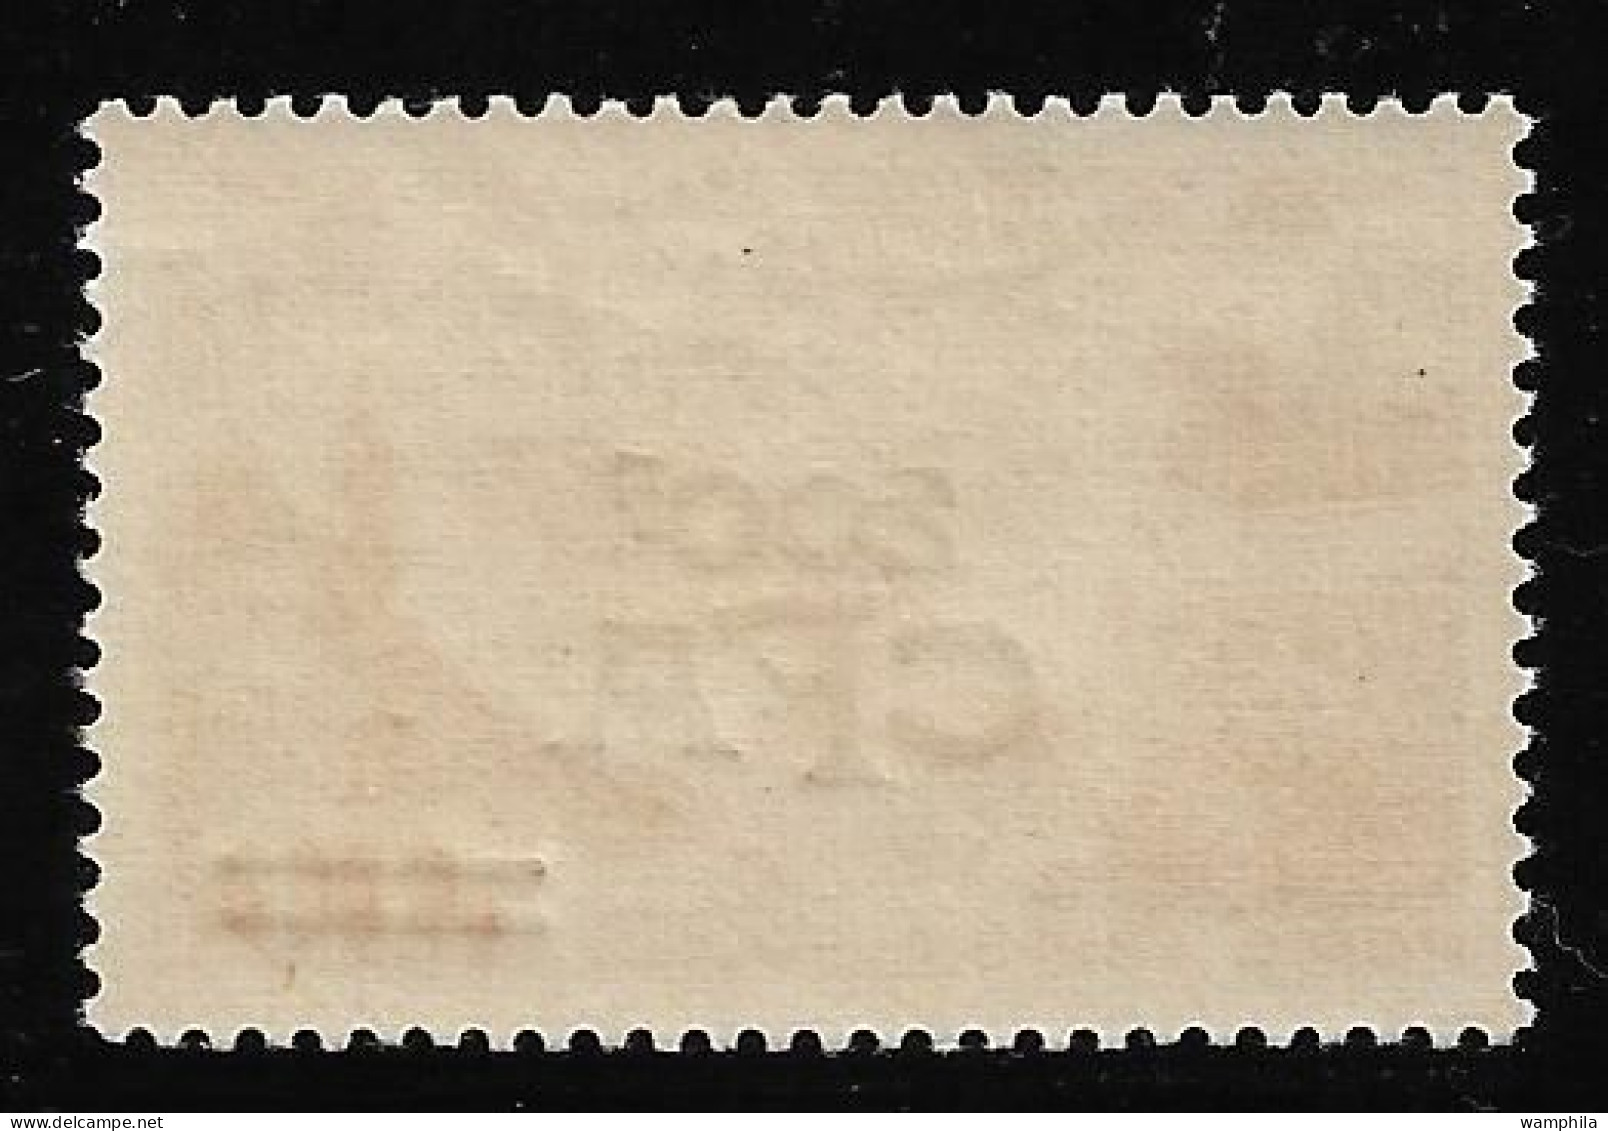 Réunion 1949 P.A N°50**, Vues Stylisées. Marseille. Cote 75€ - Poste Aérienne